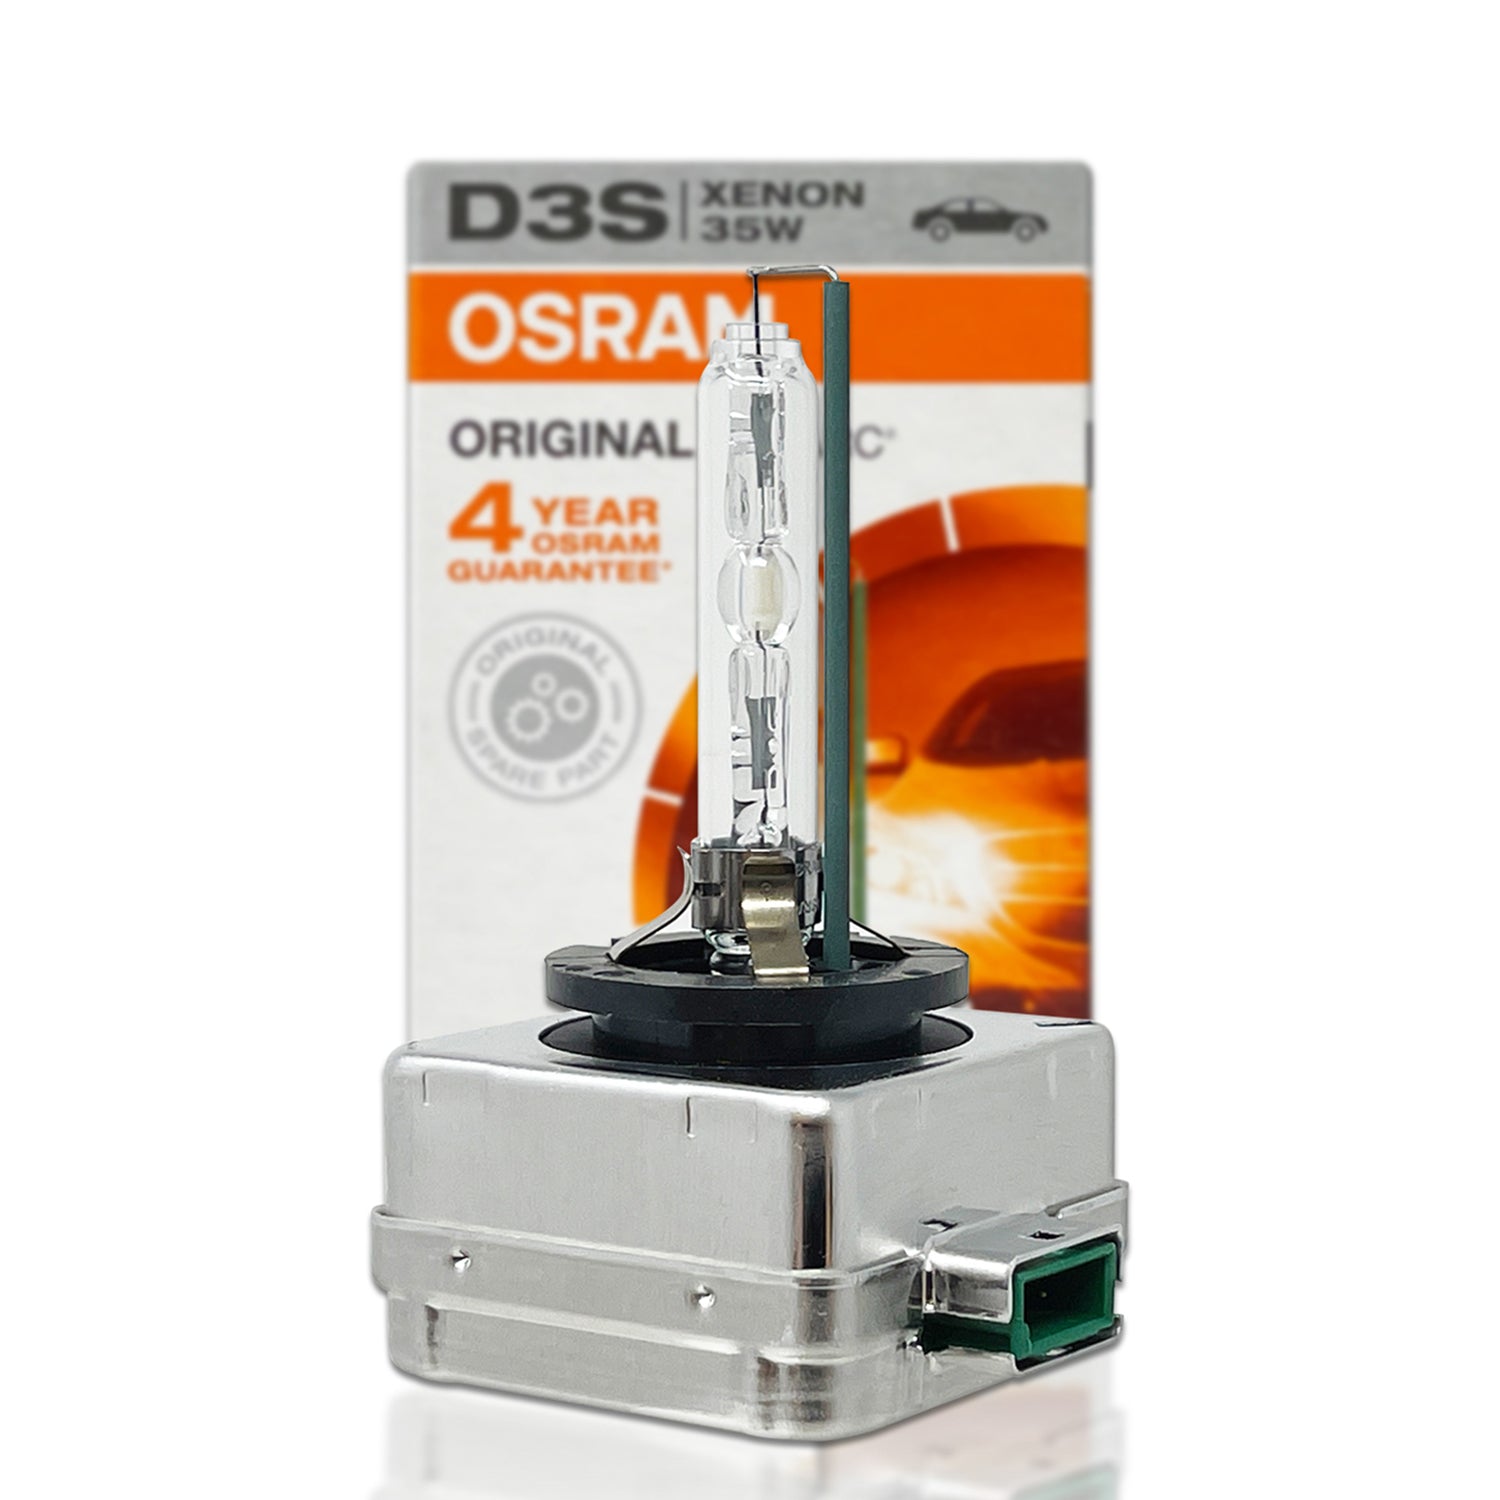 D3S Osram Night Breaker Laser, 66340XNN